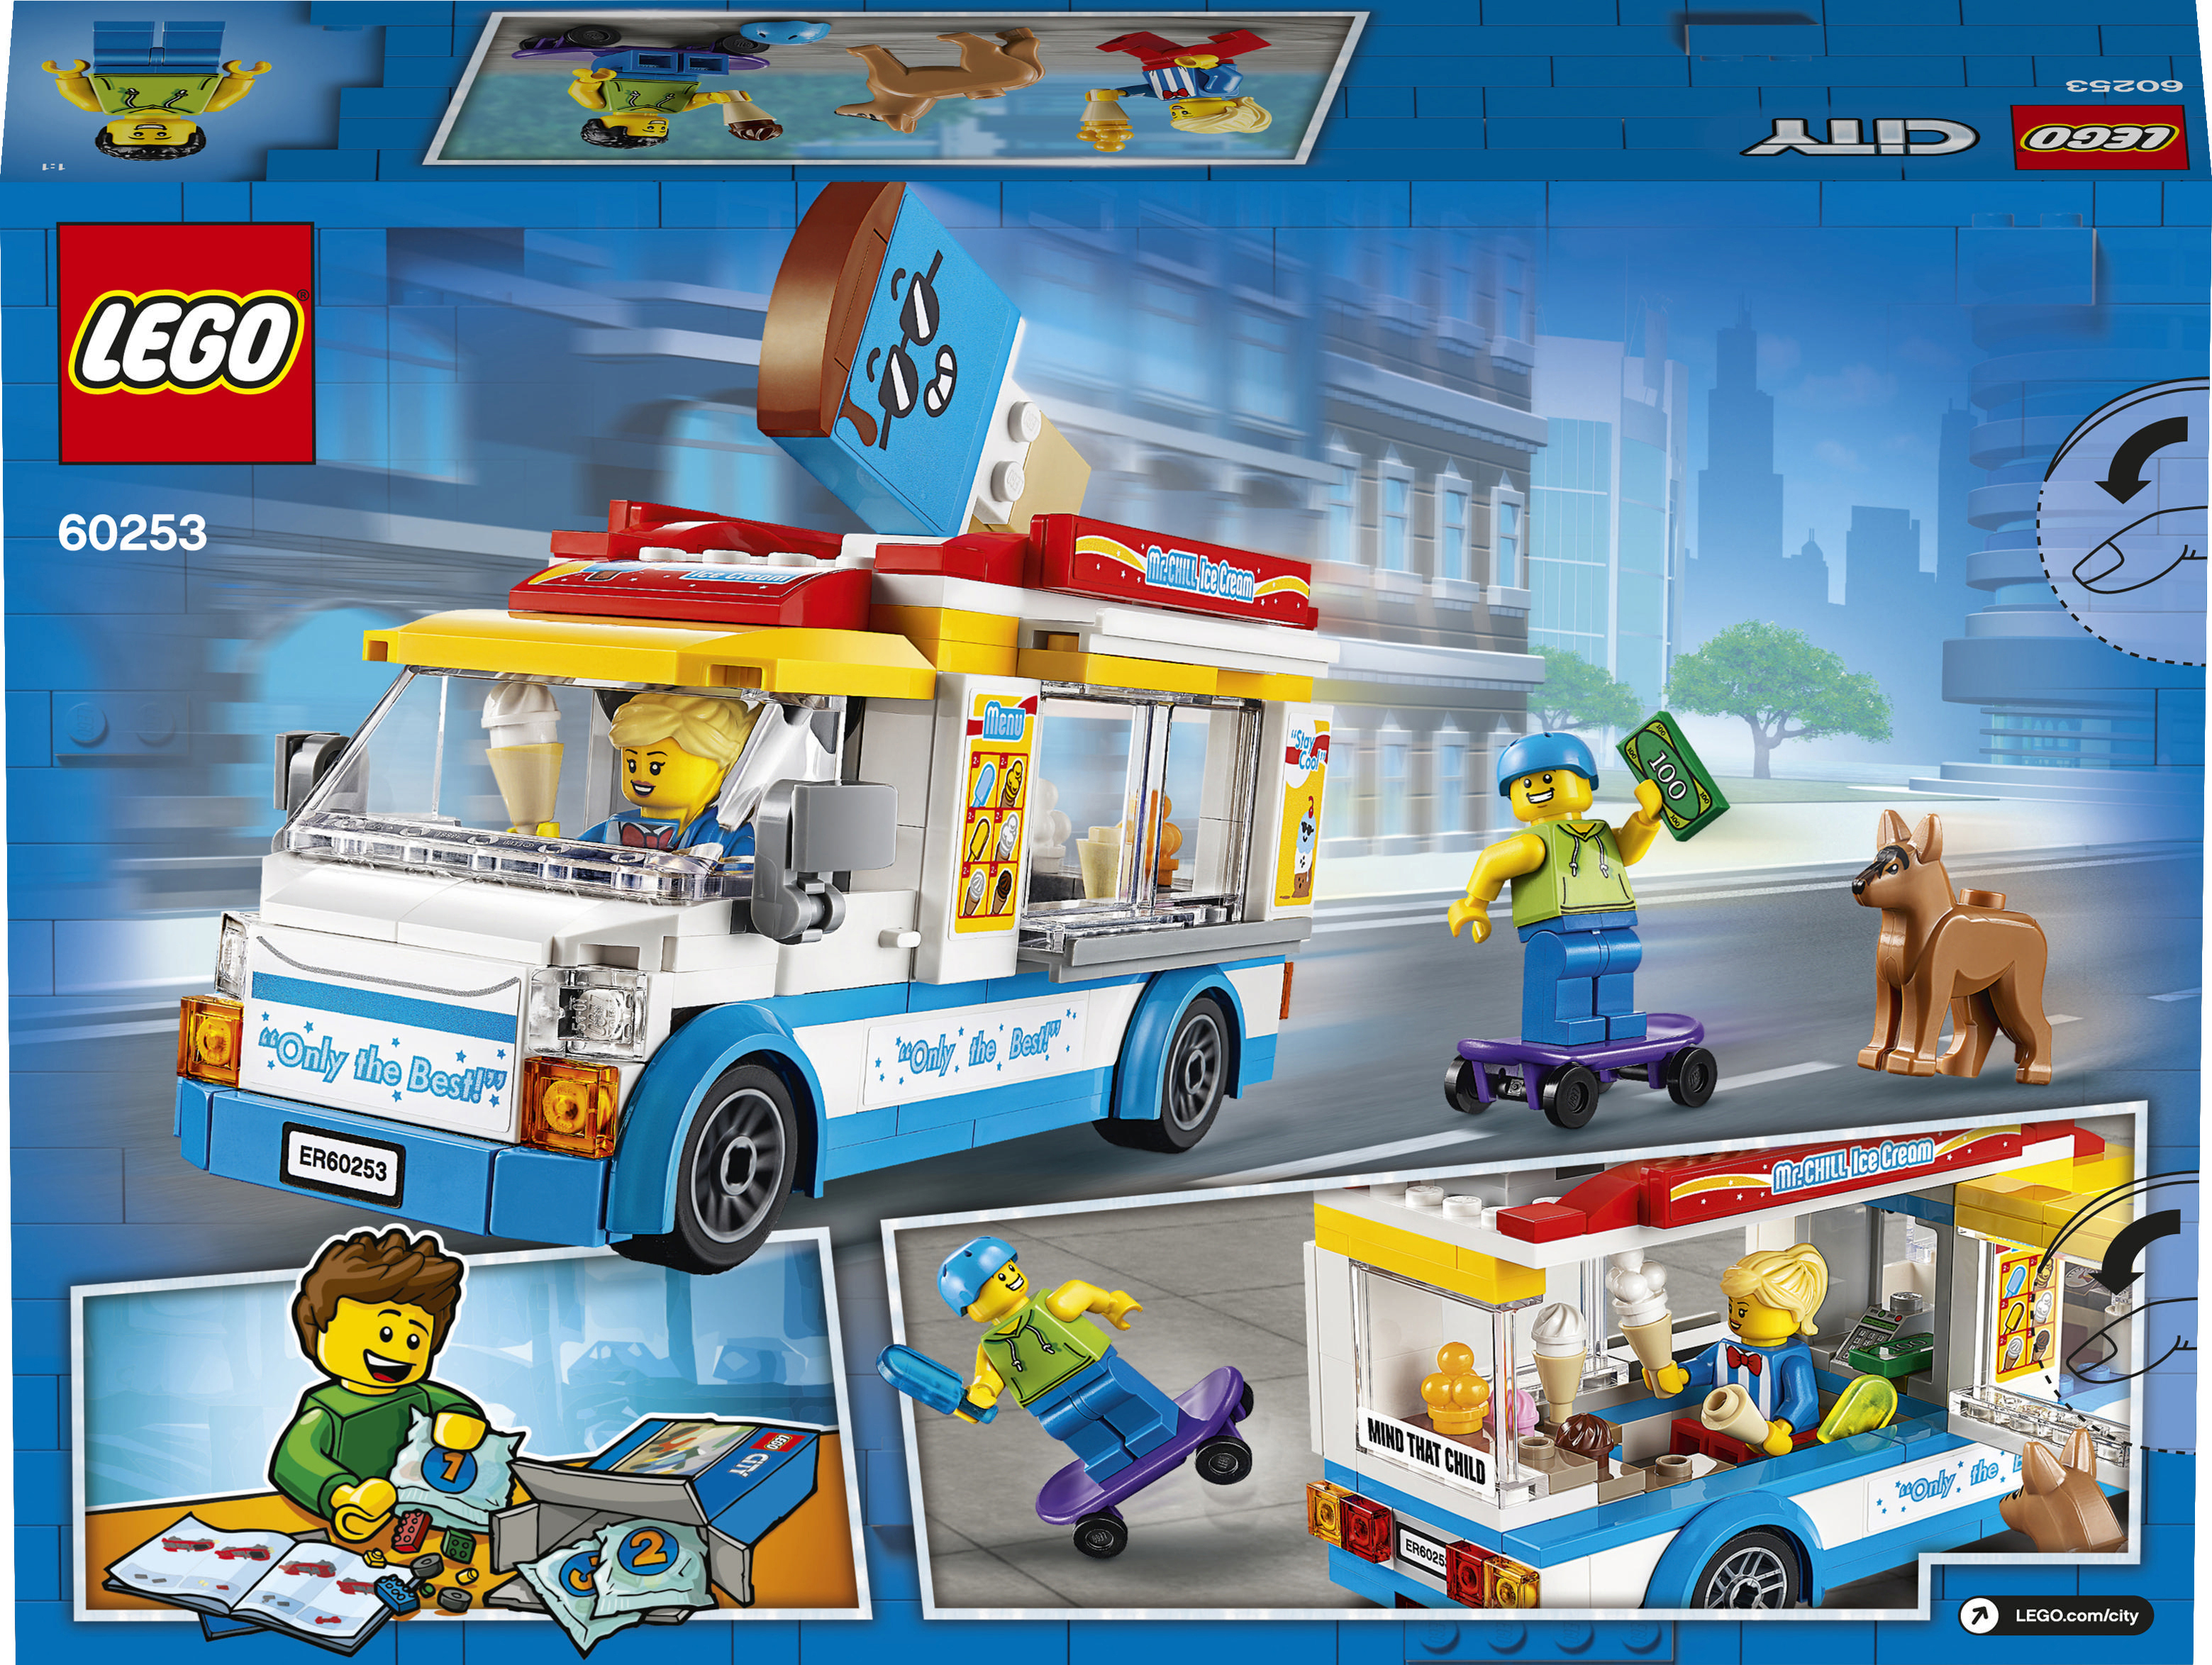 LEGO City 60253 Eiswagen Mehrfarbig Bausatz